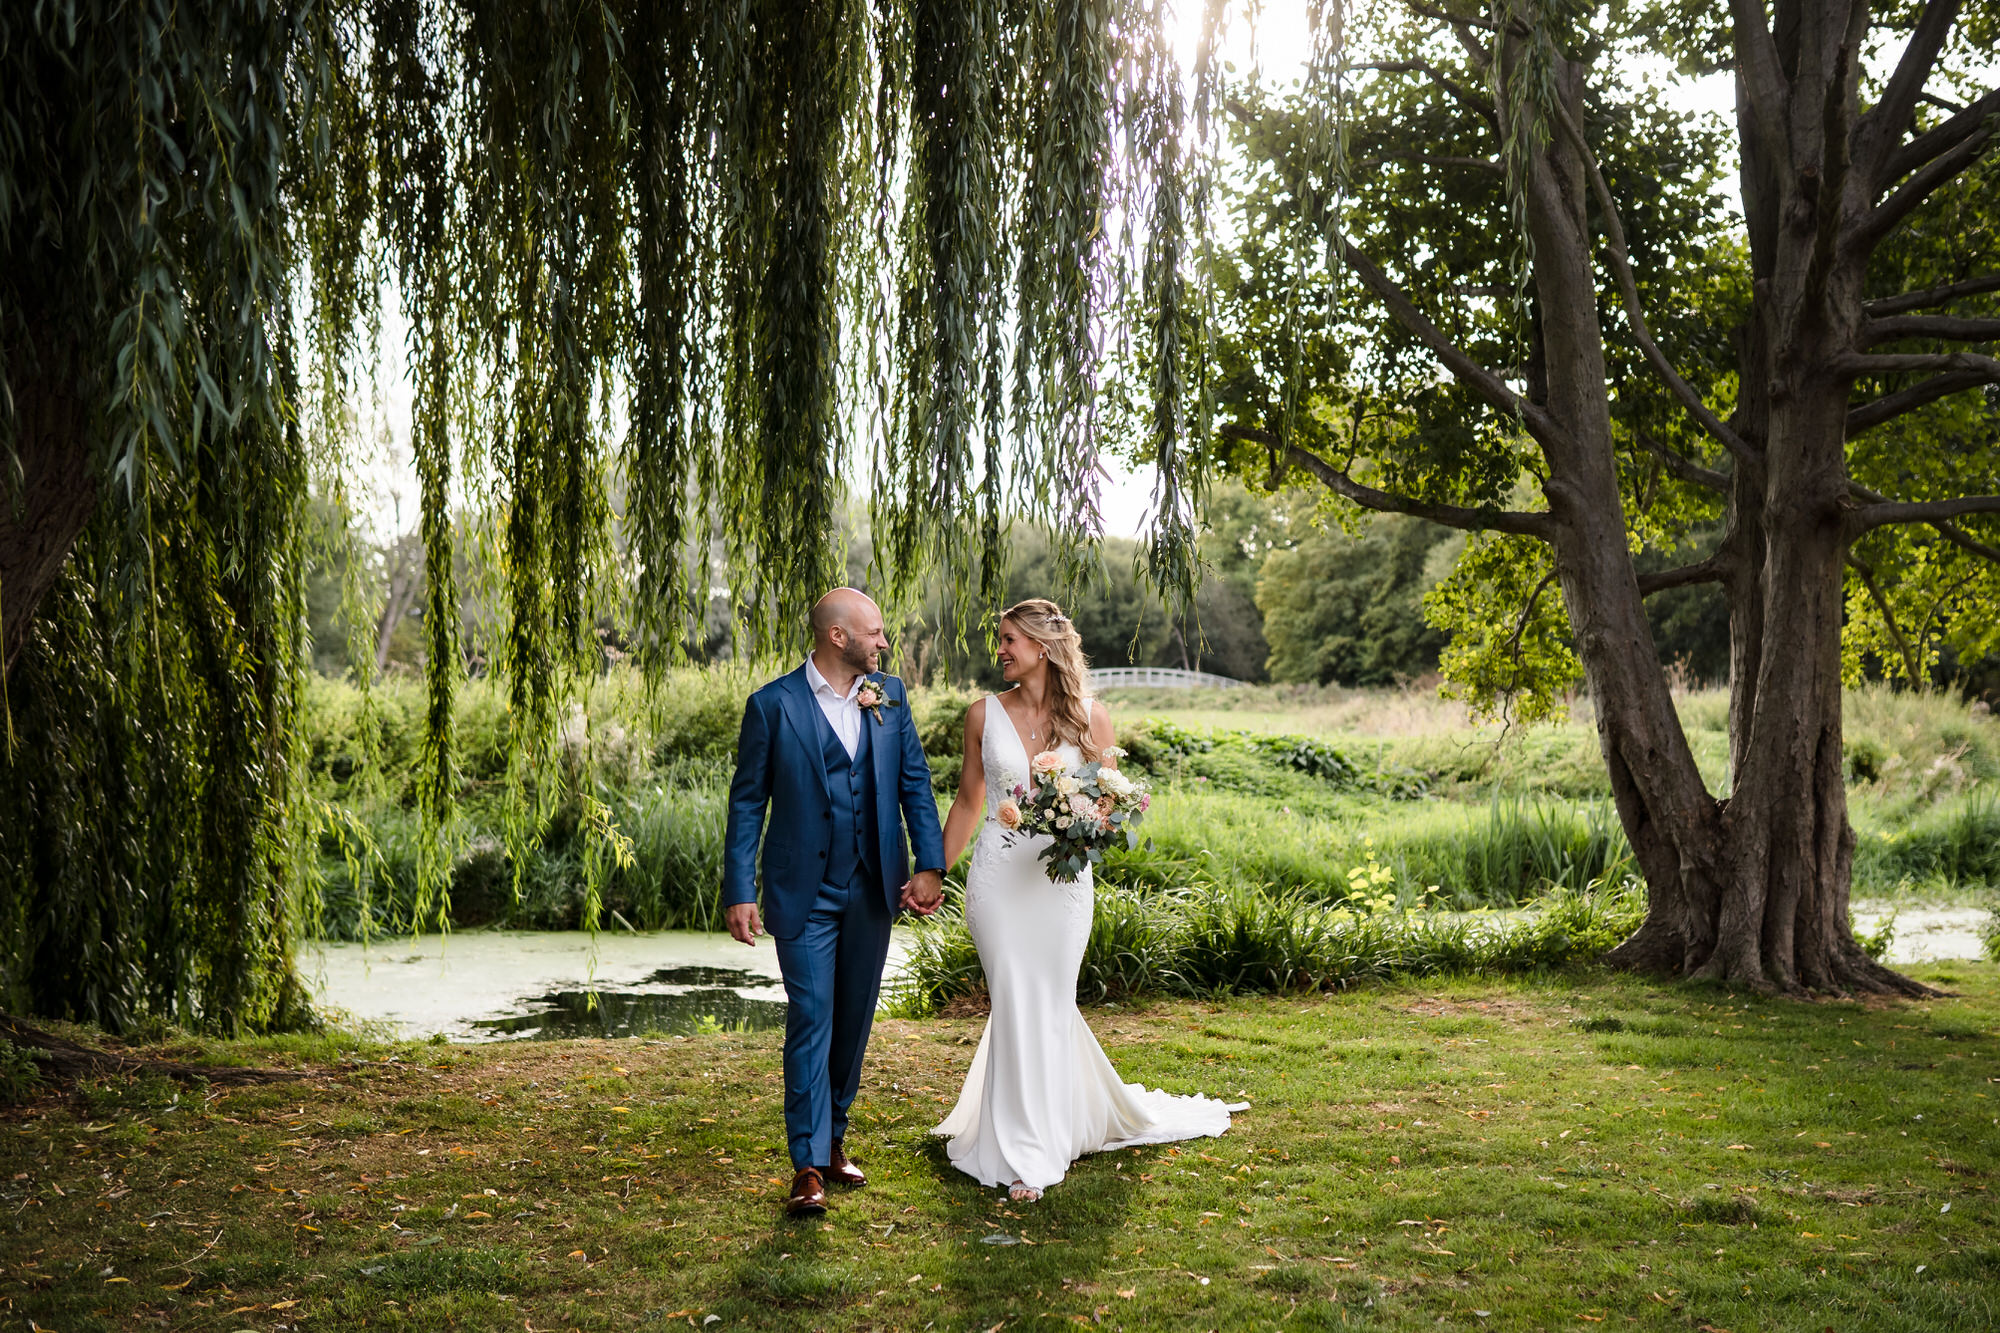 Martina & Duncan | Garden wedding in Saffron Walden